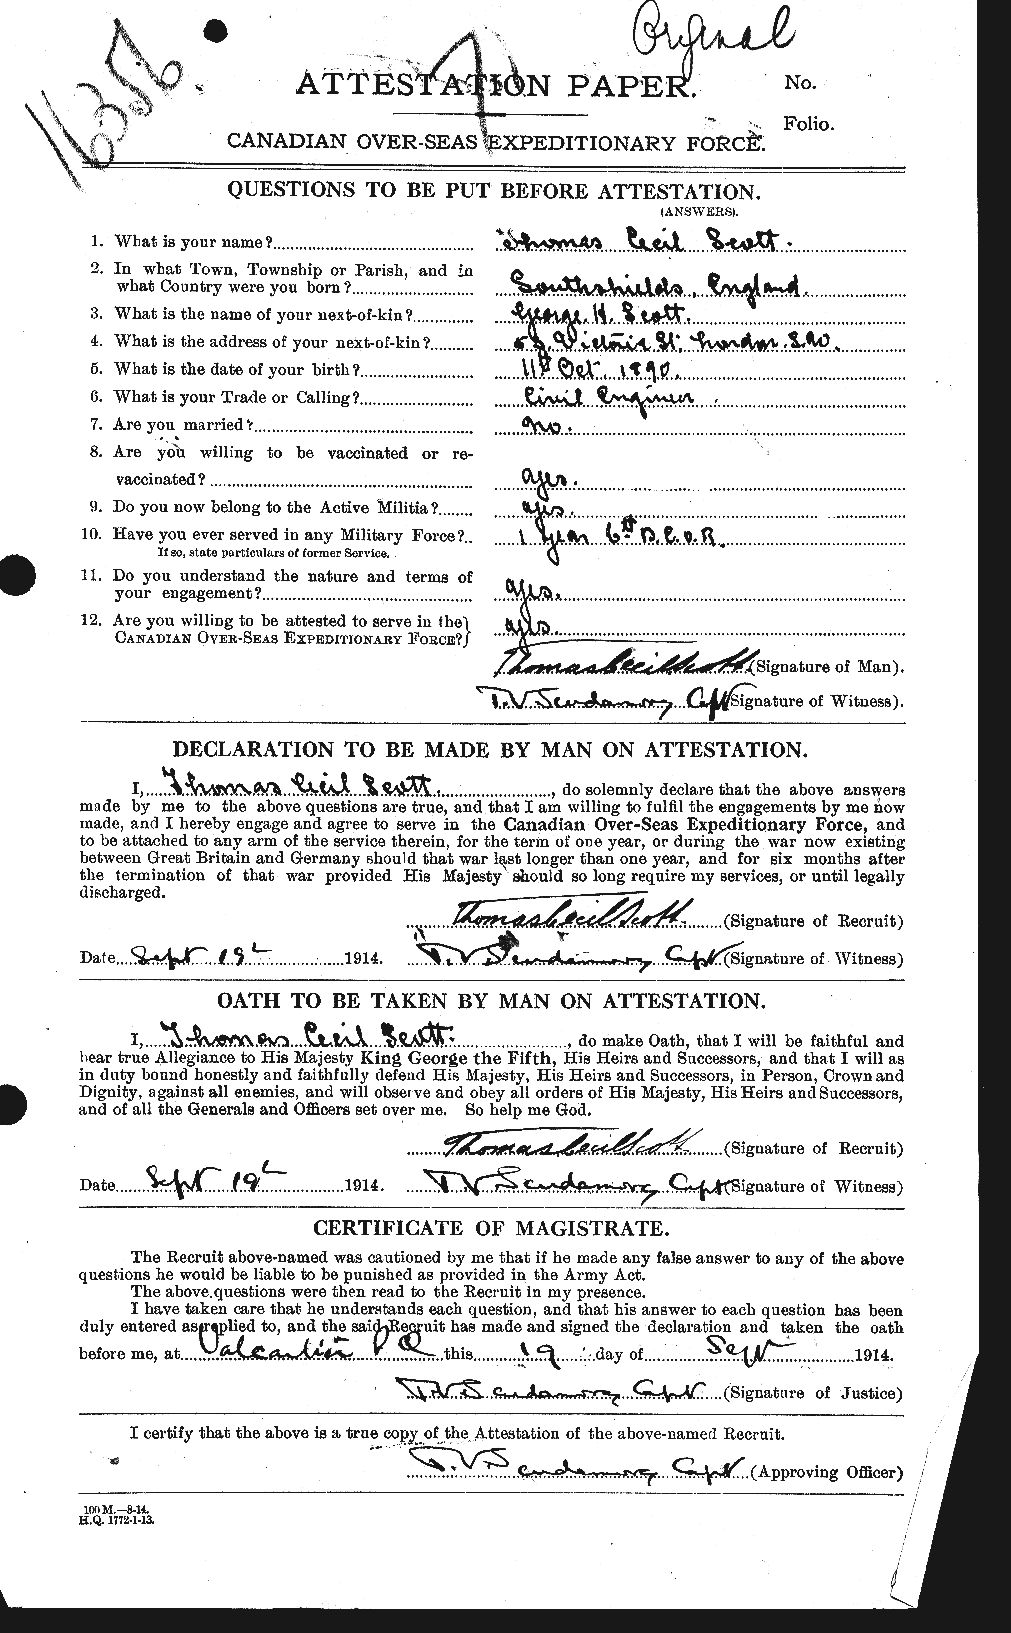 Dossiers du Personnel de la Première Guerre mondiale - CEC 088521a